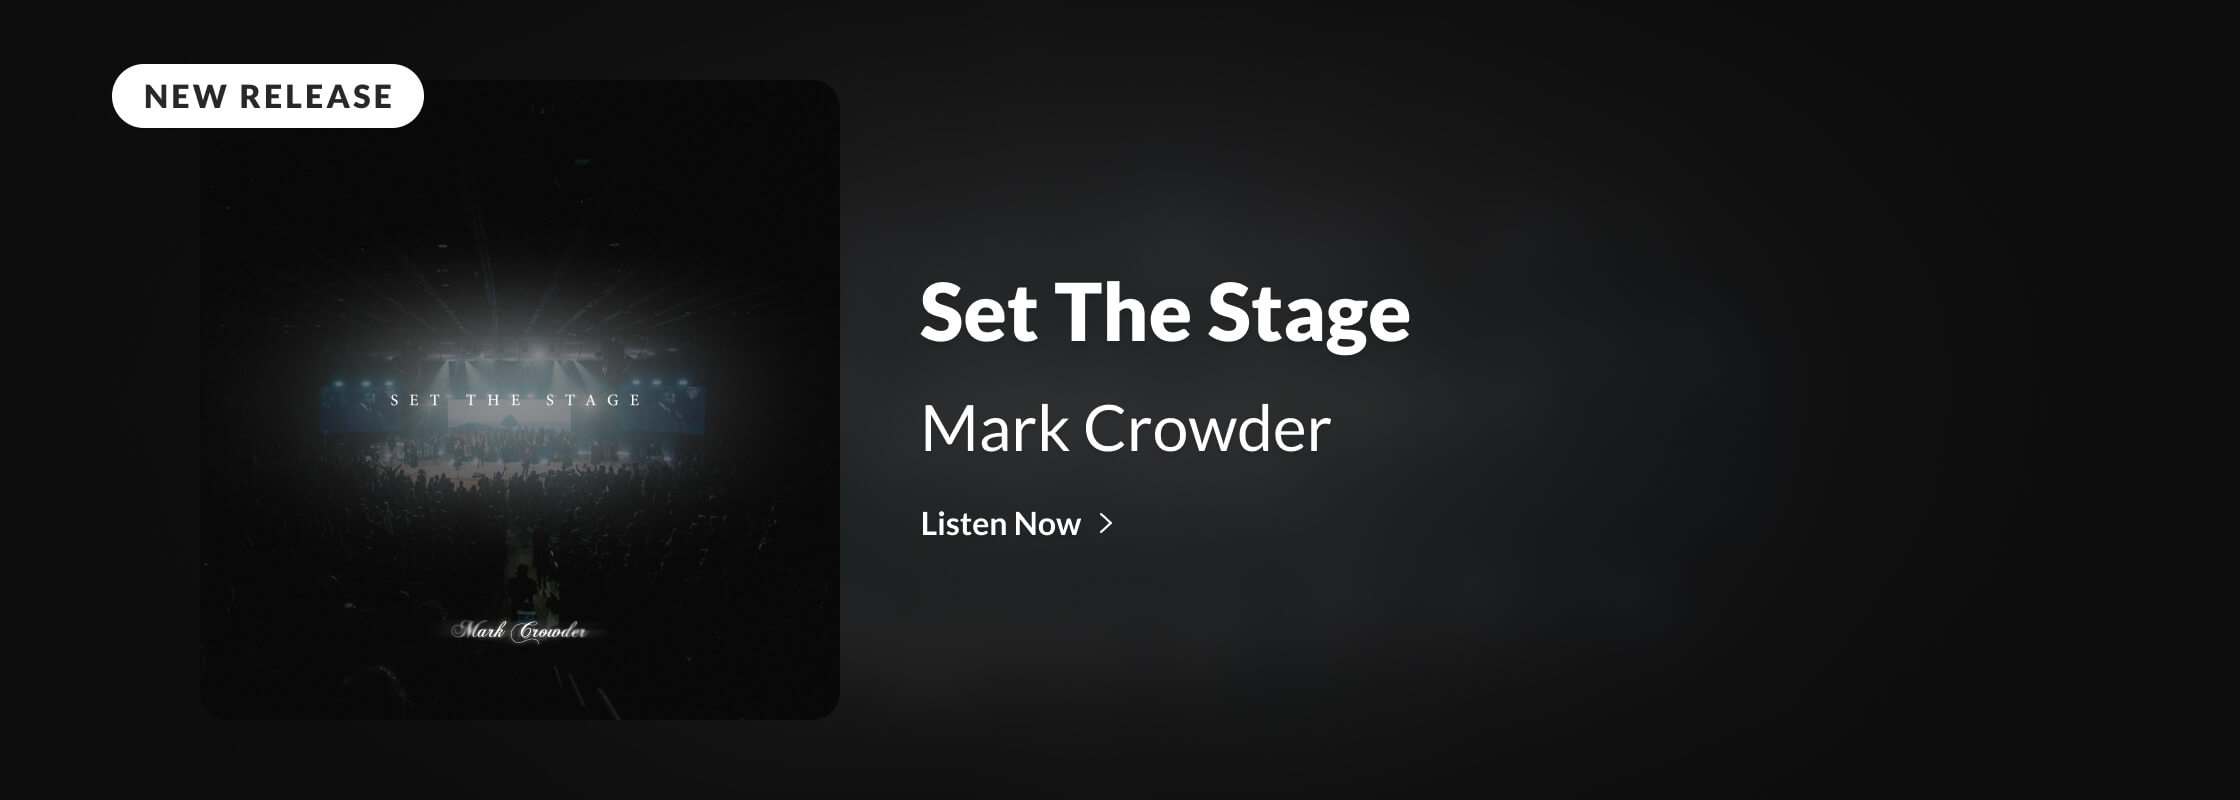 Mark Crowder | Set The Stage